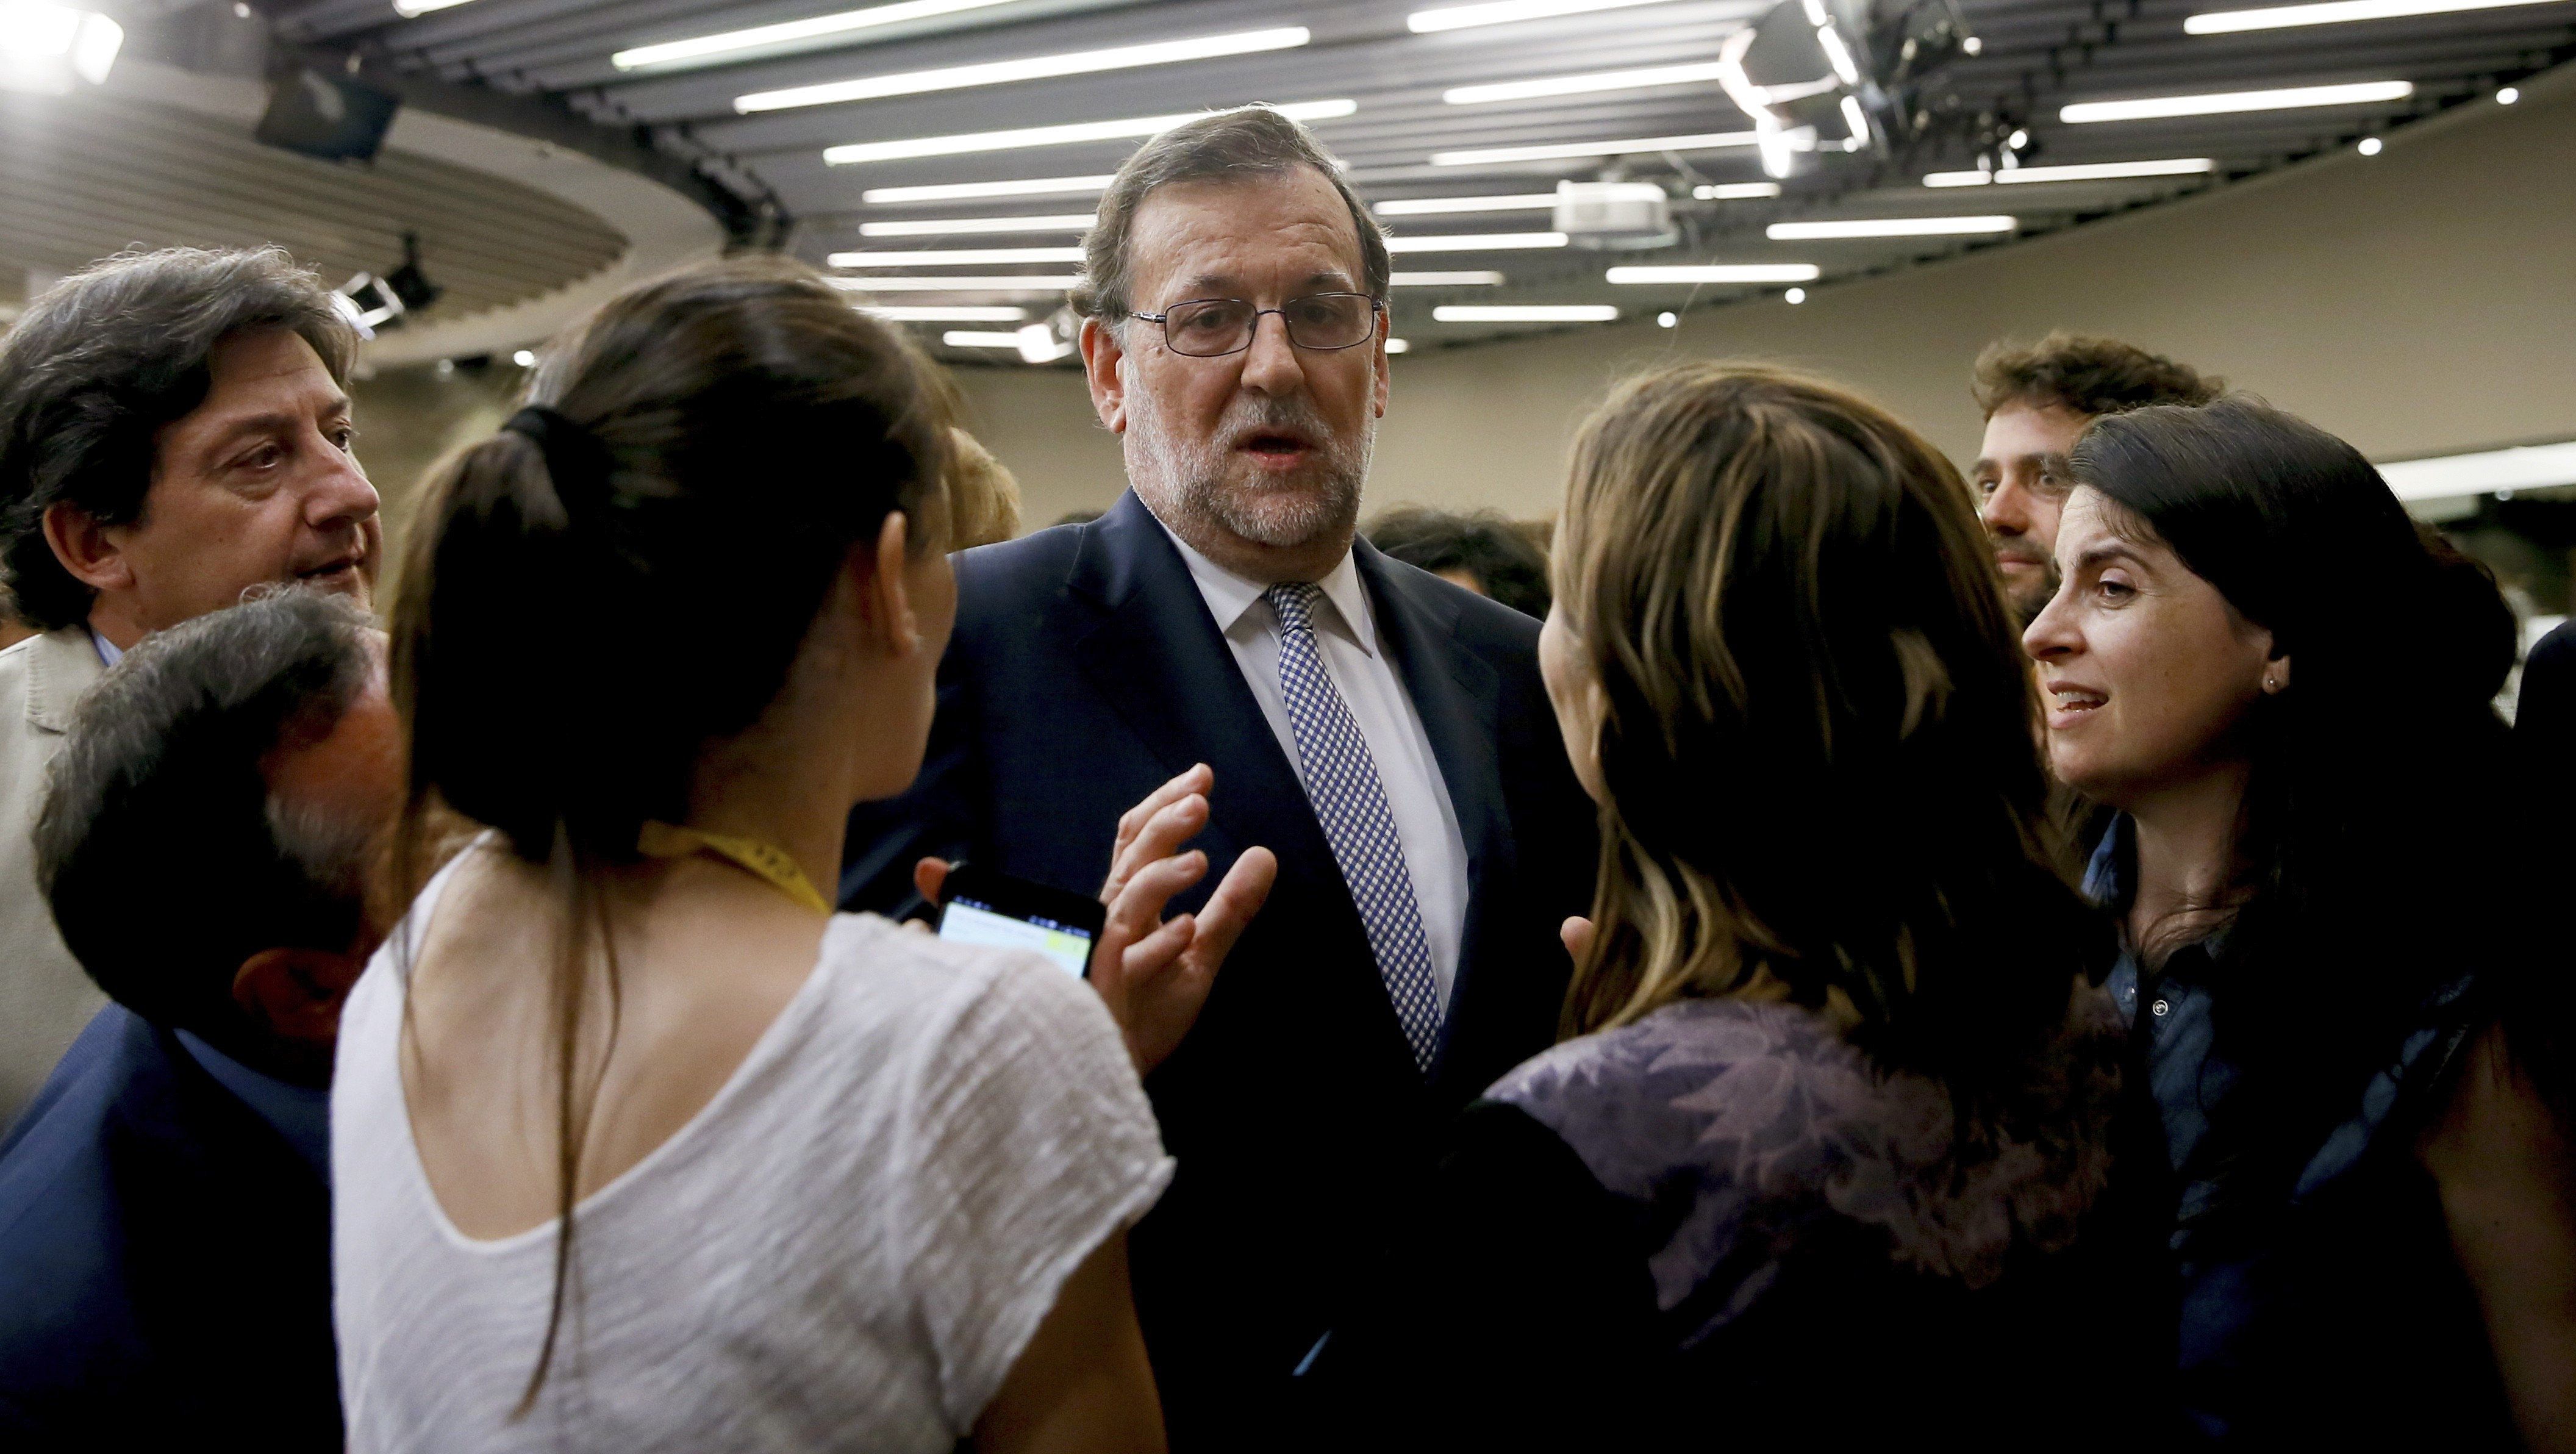 New York Times carrega contra l'Espanya "incapaç" de formar govern